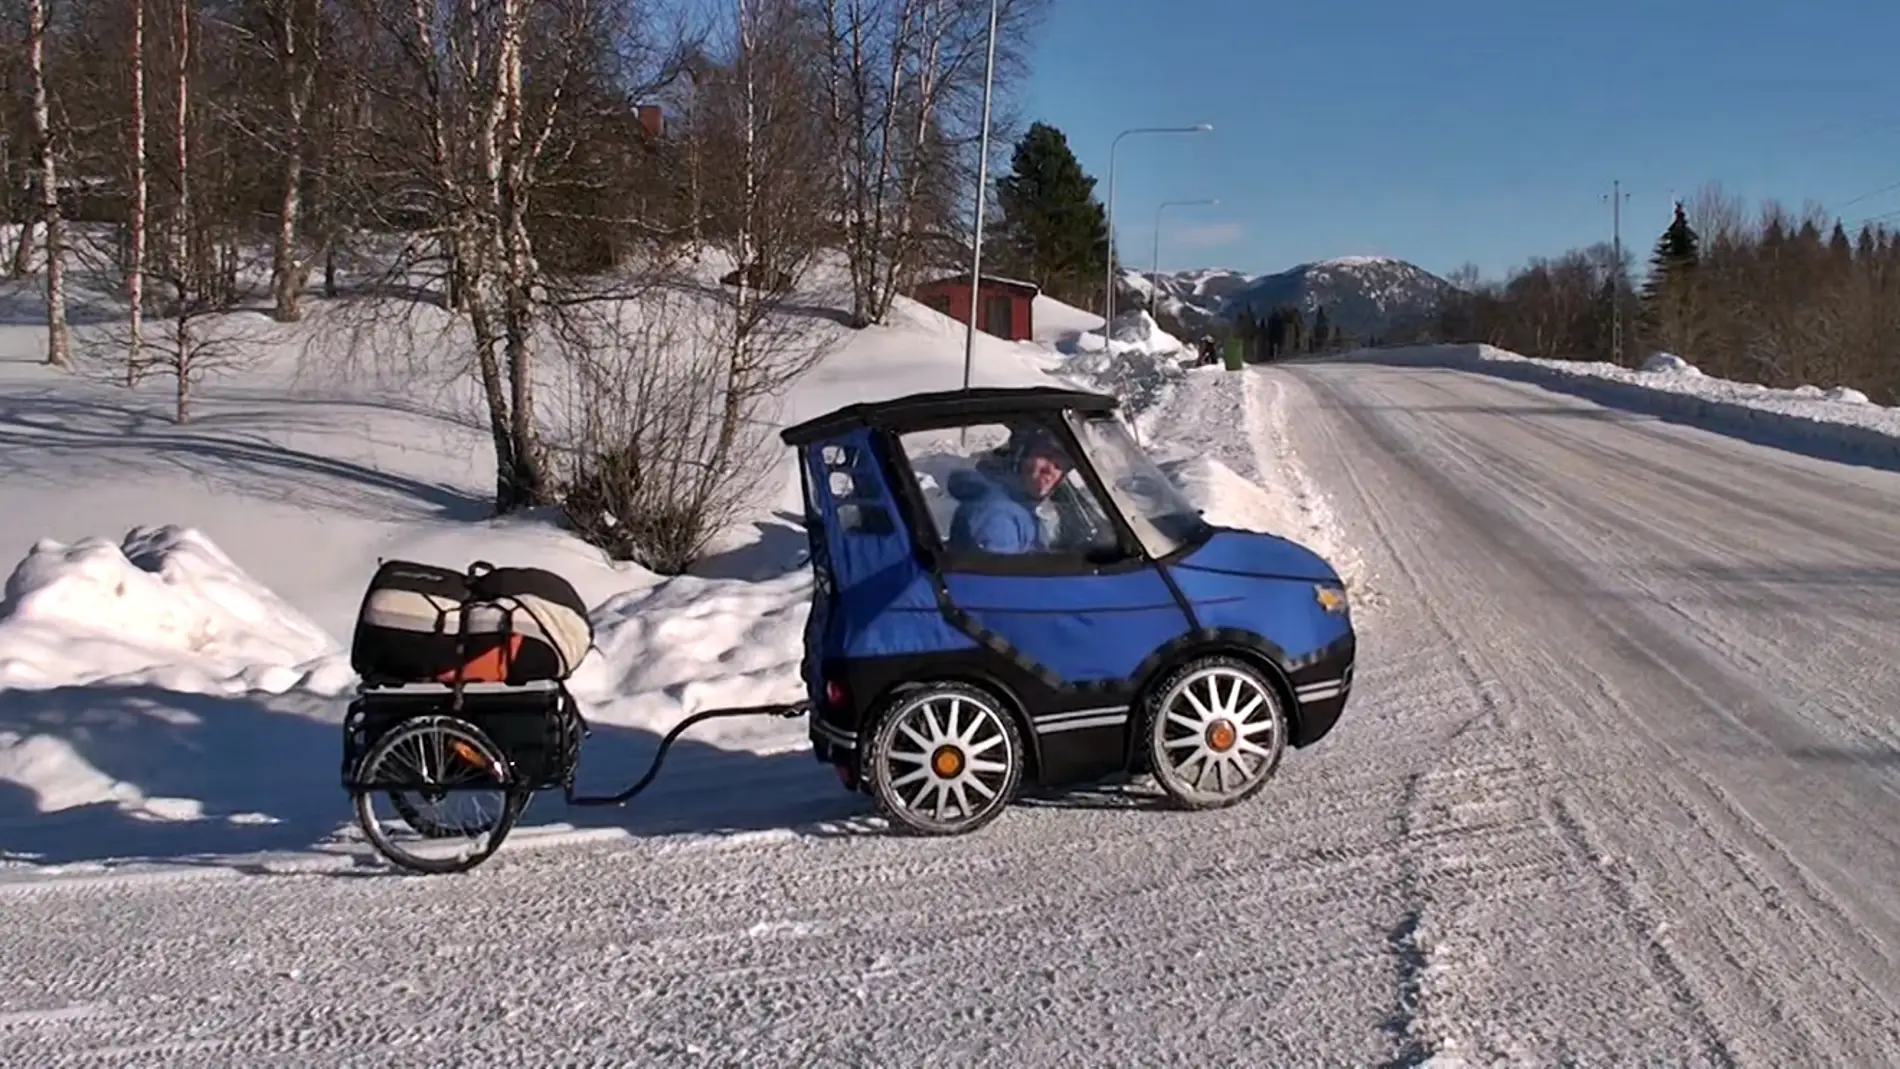 Evaluación Establecer Malgastar Esta bicicleta de 4 ruedas es el mejor coche para la nieve (Vídeo)